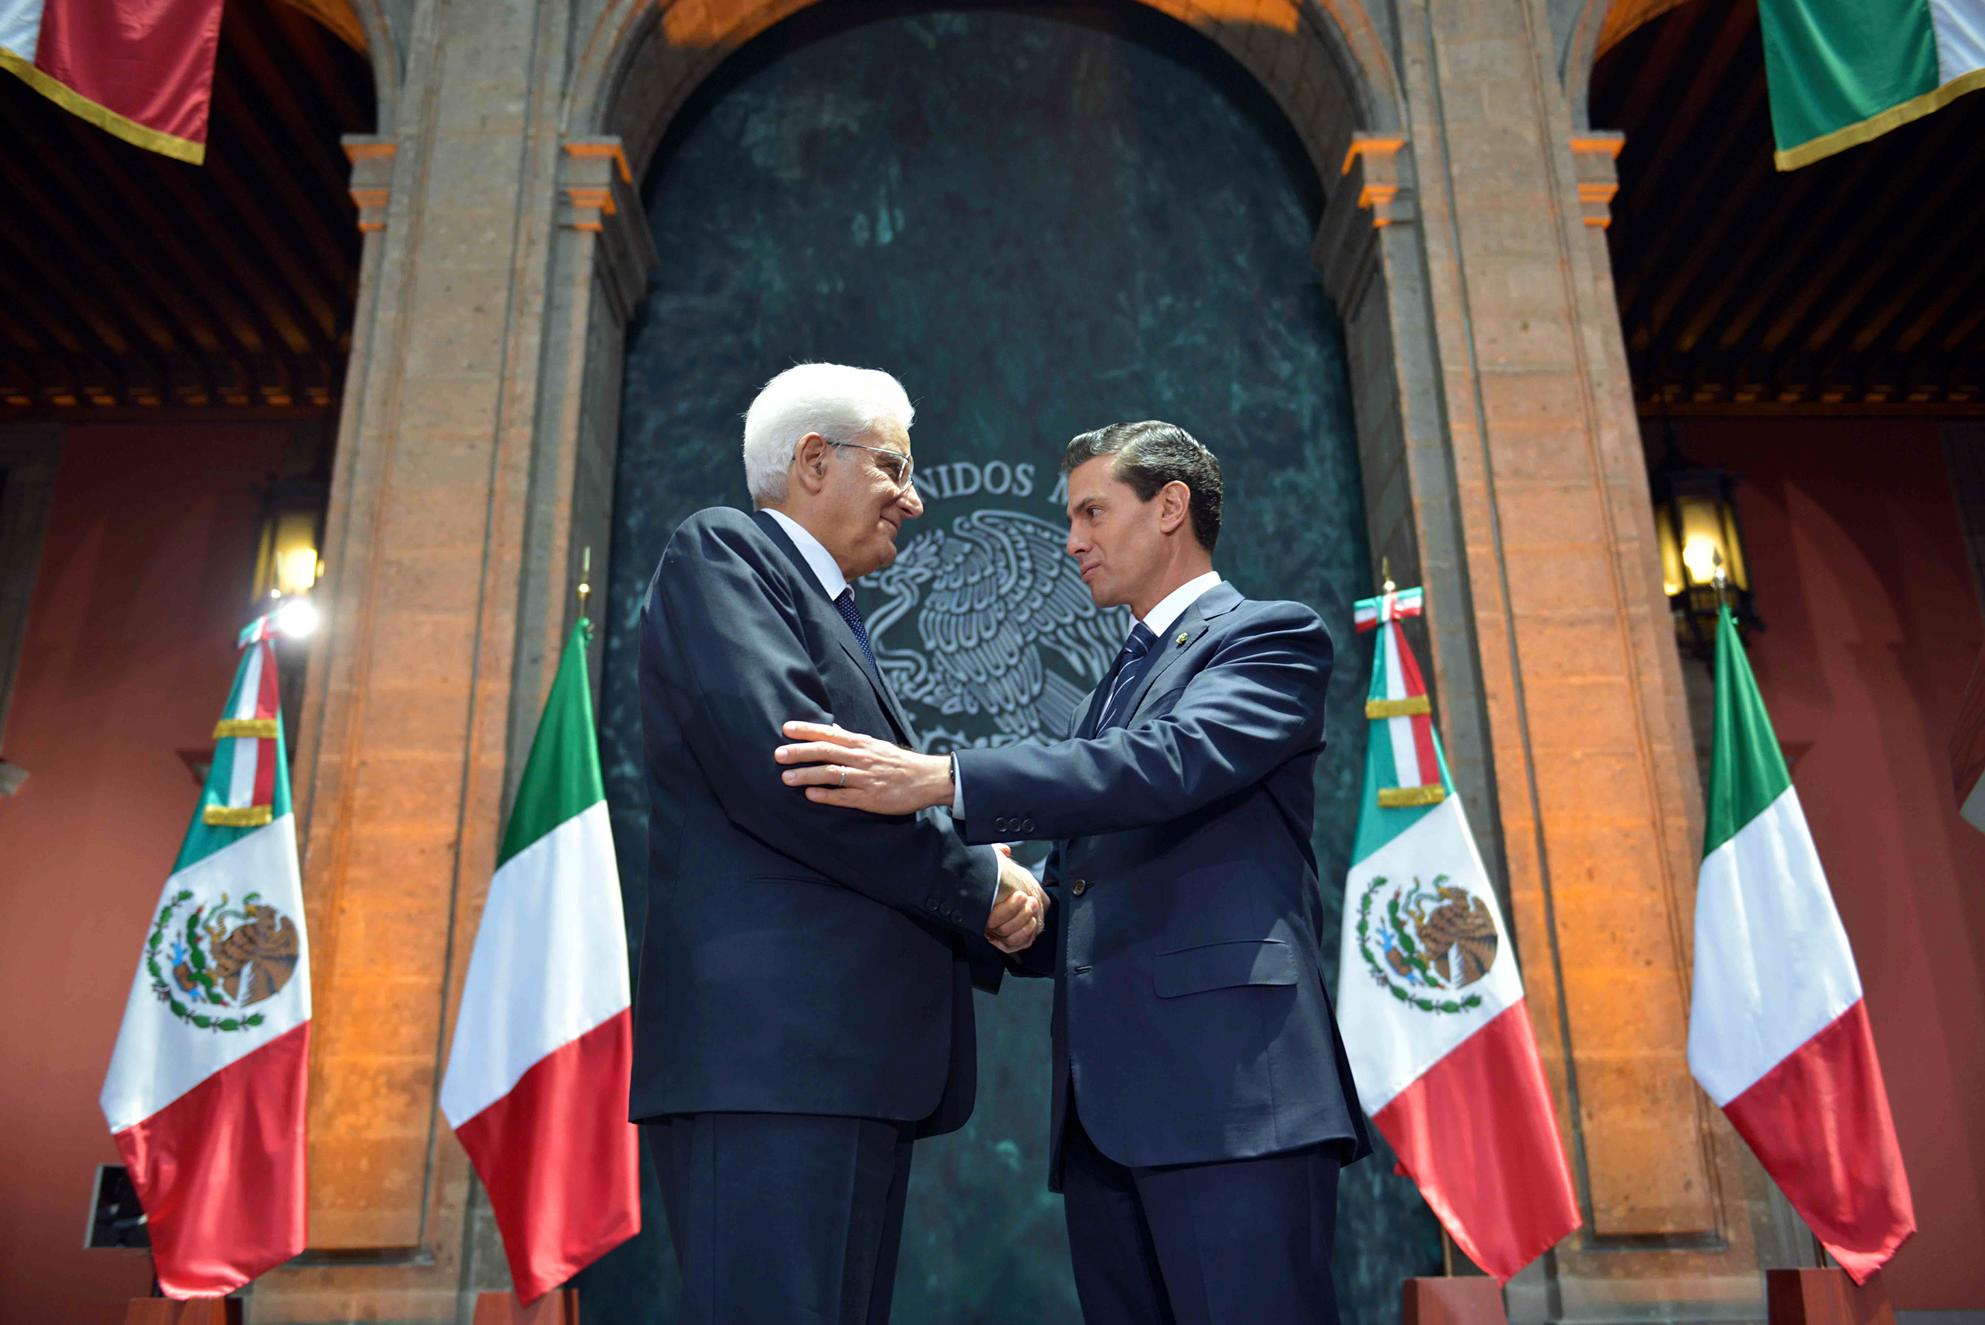 Acuerdos entre Mexico y Italia